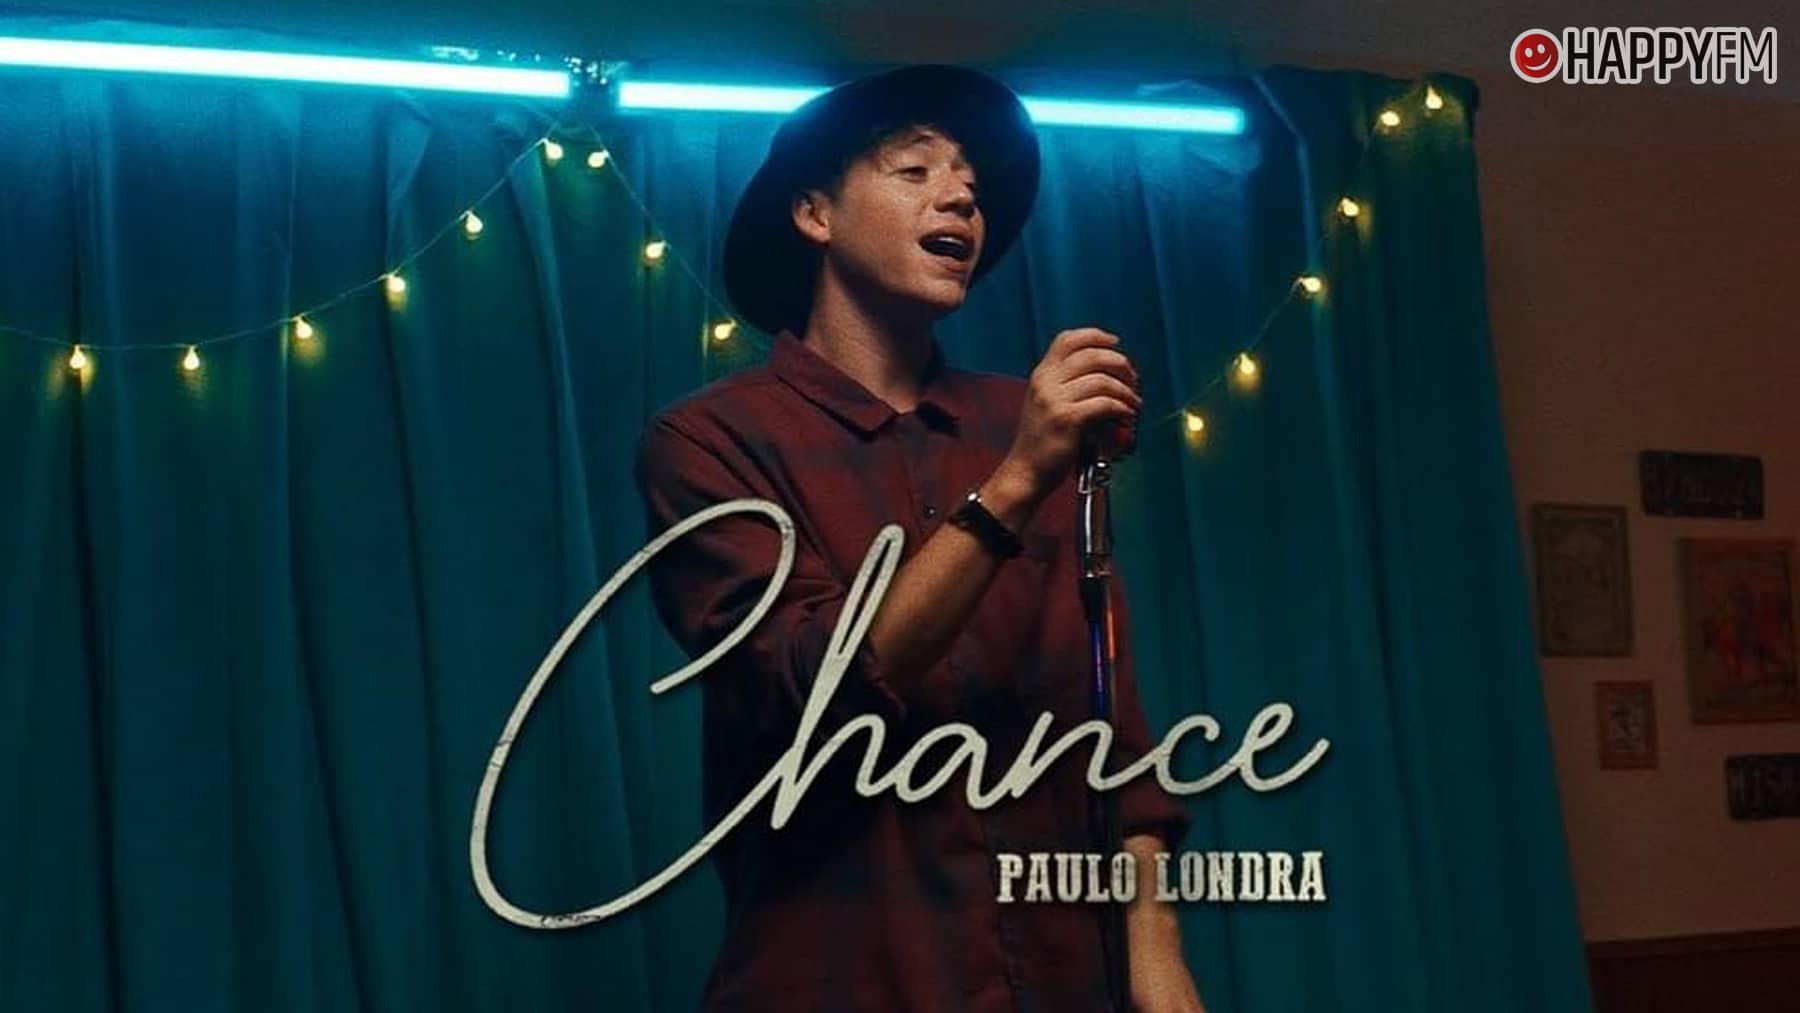 ‘Chance’, de Paulo Londra: letra y vídeo loading=